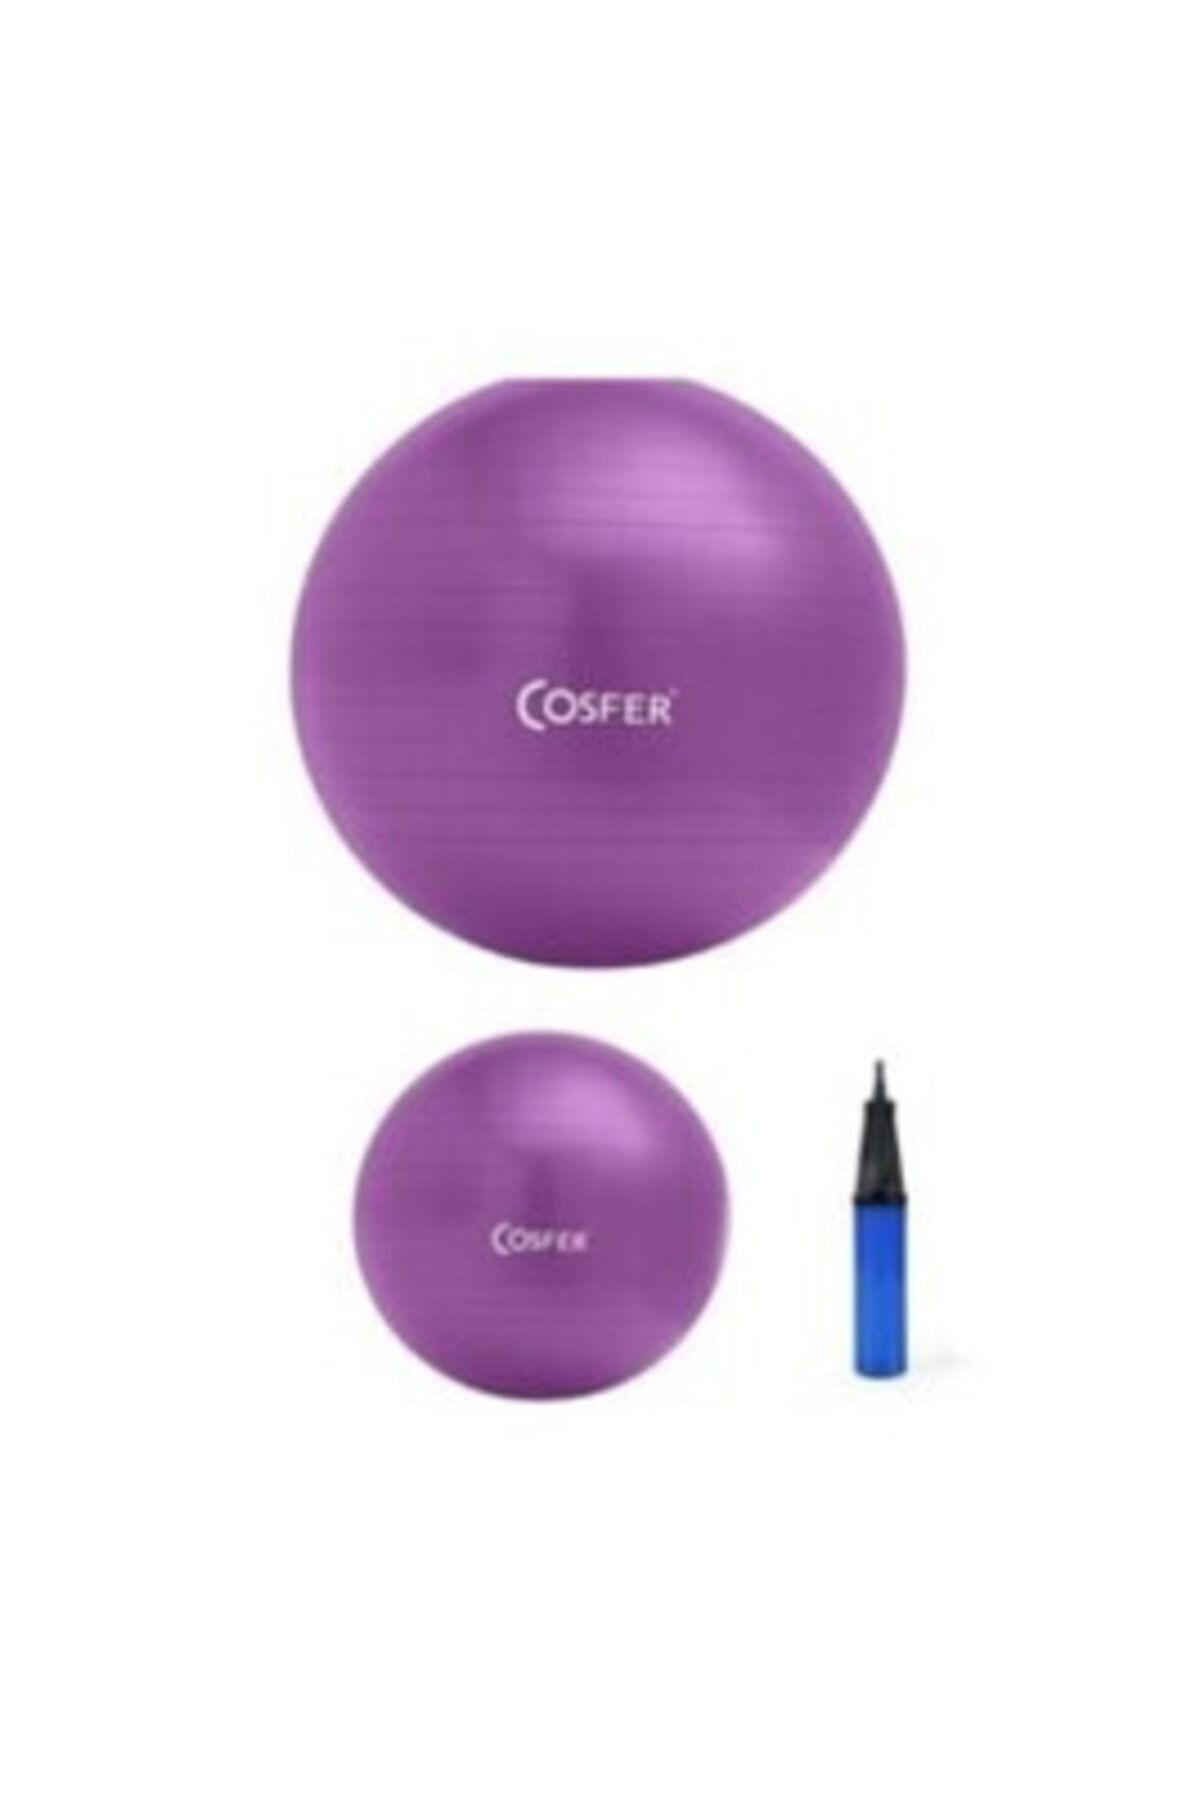 Cosfer 55 Cm Pilates Lüx Topu - 20cm Mini Denge Topu Ve Pompa Seti Mor Pilates Spor Kondisyon Mor Set Pompa